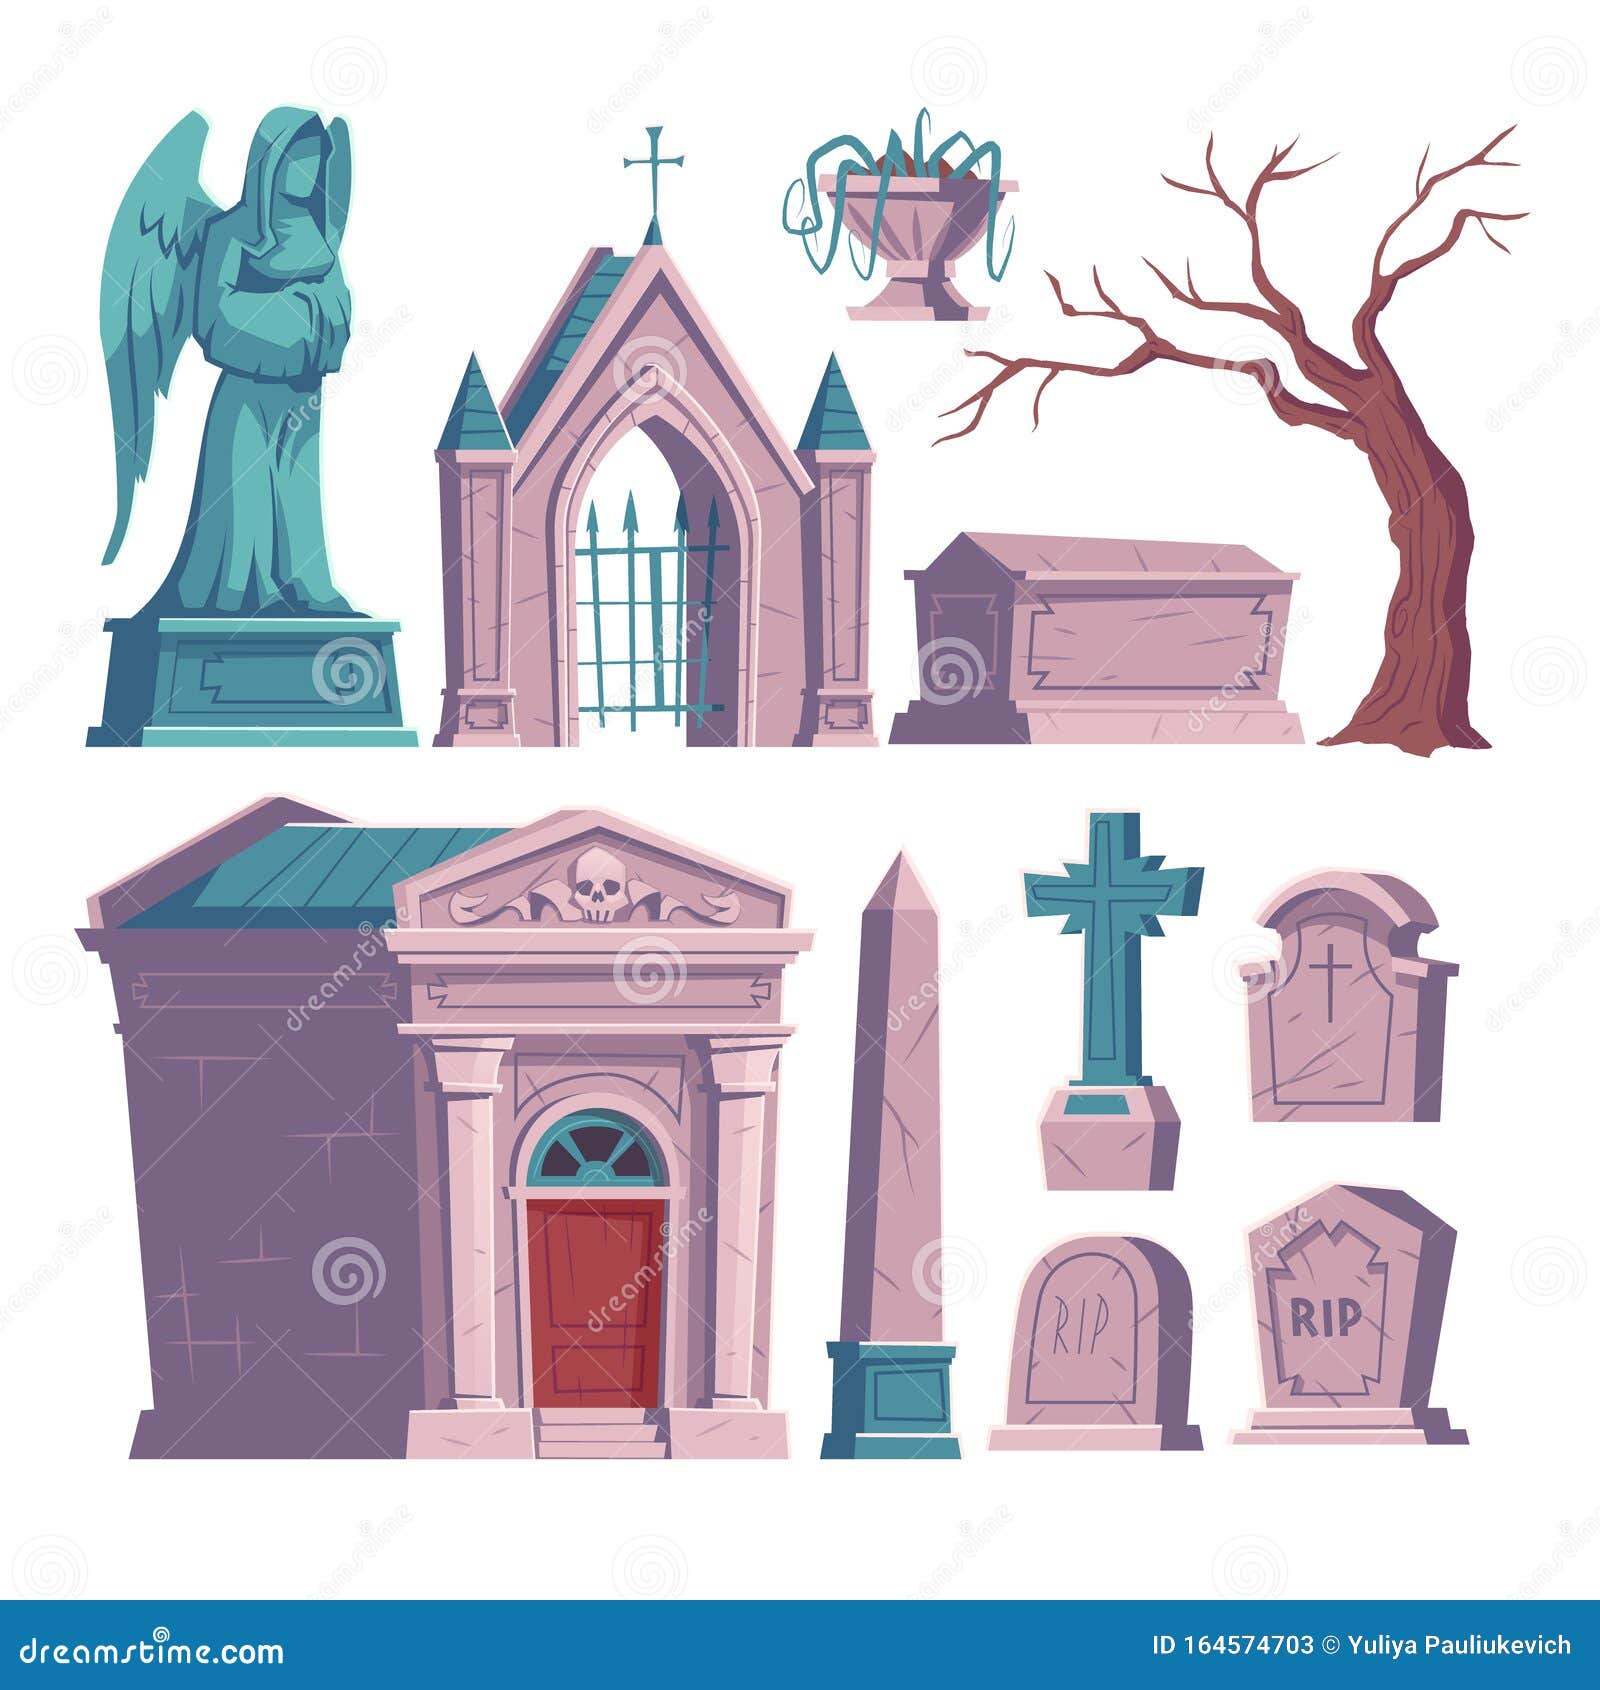 墓地 墓碑上刻着rip 索库里向量例证 插画包括有查出 坟墓 埋葬 墓碑 墓石 交叉